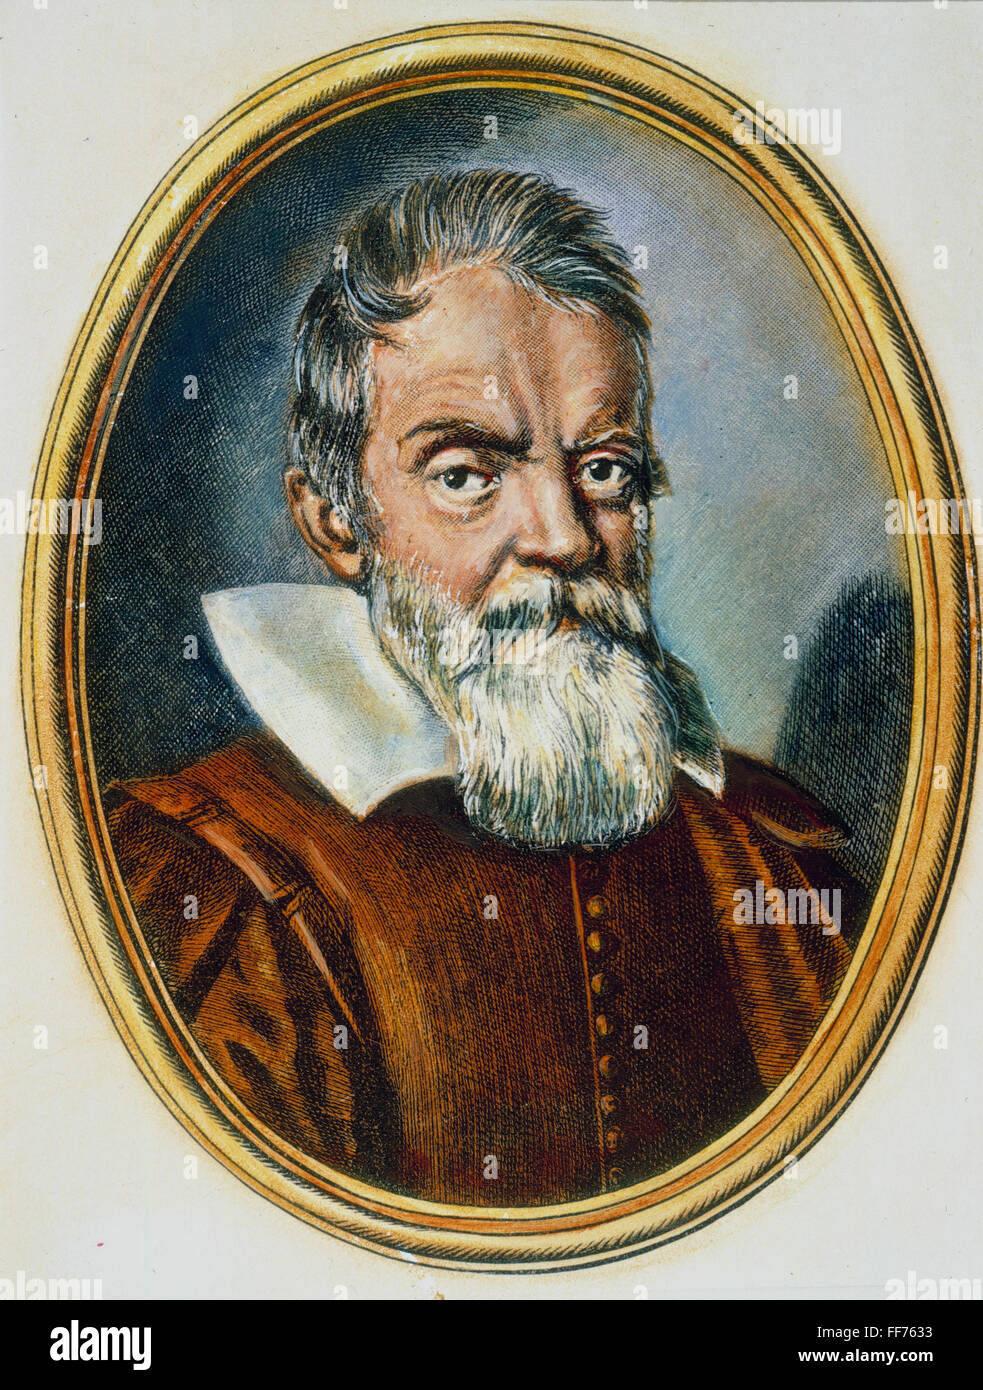 GALILEO GALILEI (1564-1642). /NItalian matematico, astronomo e fisico. La linea di incisione, 1624, da Ottavio Leoni. Foto Stock